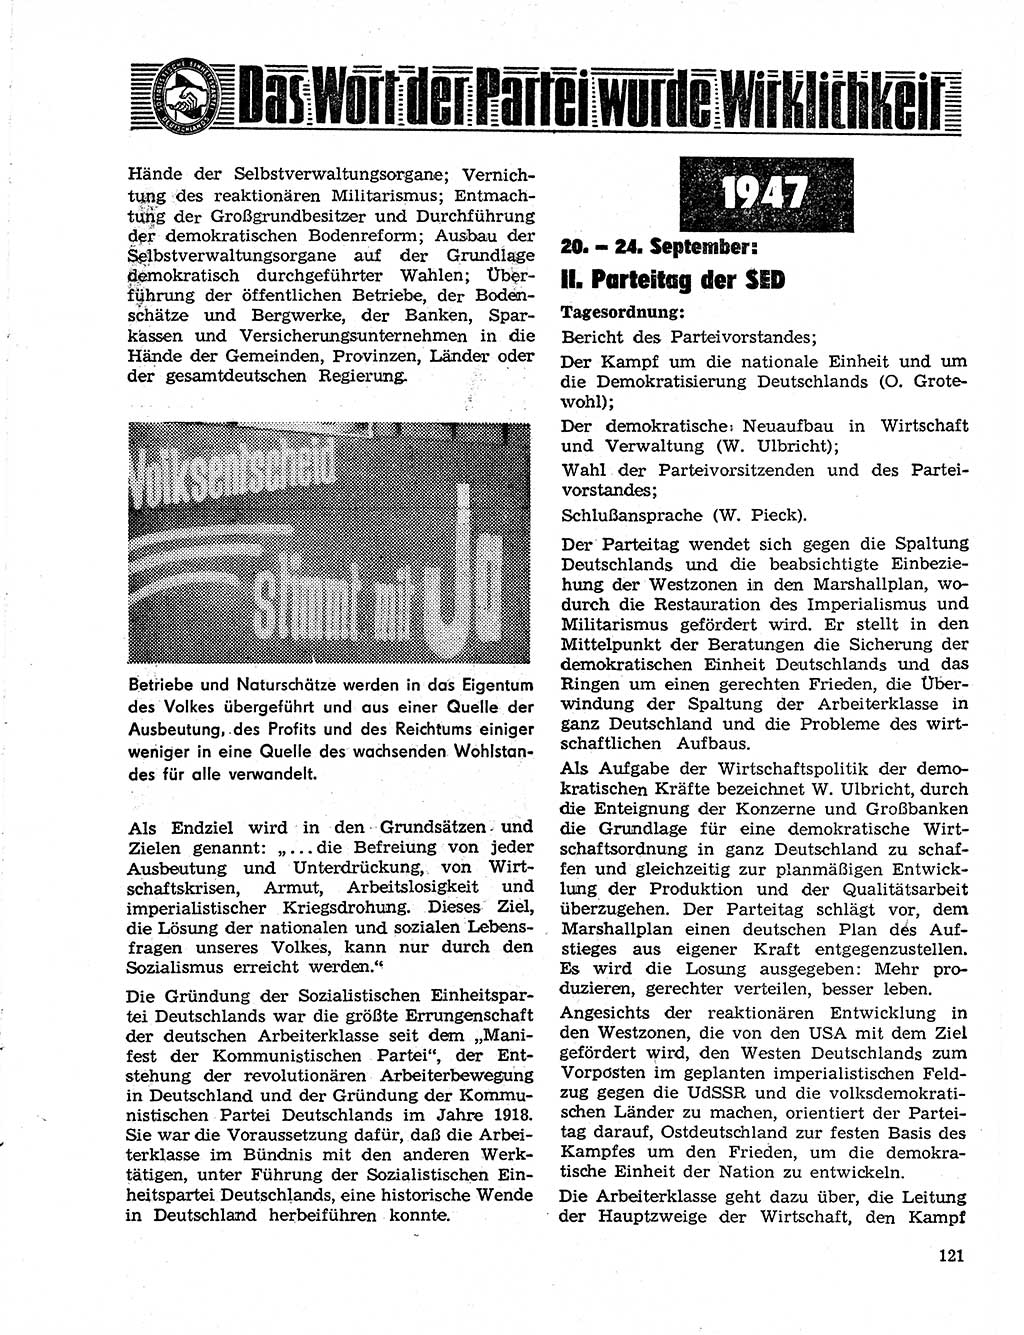 Neuer Weg (NW), Organ des Zentralkomitees (ZK) der SED (Sozialistische Einheitspartei Deutschlands) für Fragen des Parteilebens, 21. Jahrgang [Deutsche Demokratische Republik (DDR)] 1966, Seite 121 (NW ZK SED DDR 1966, S. 121)